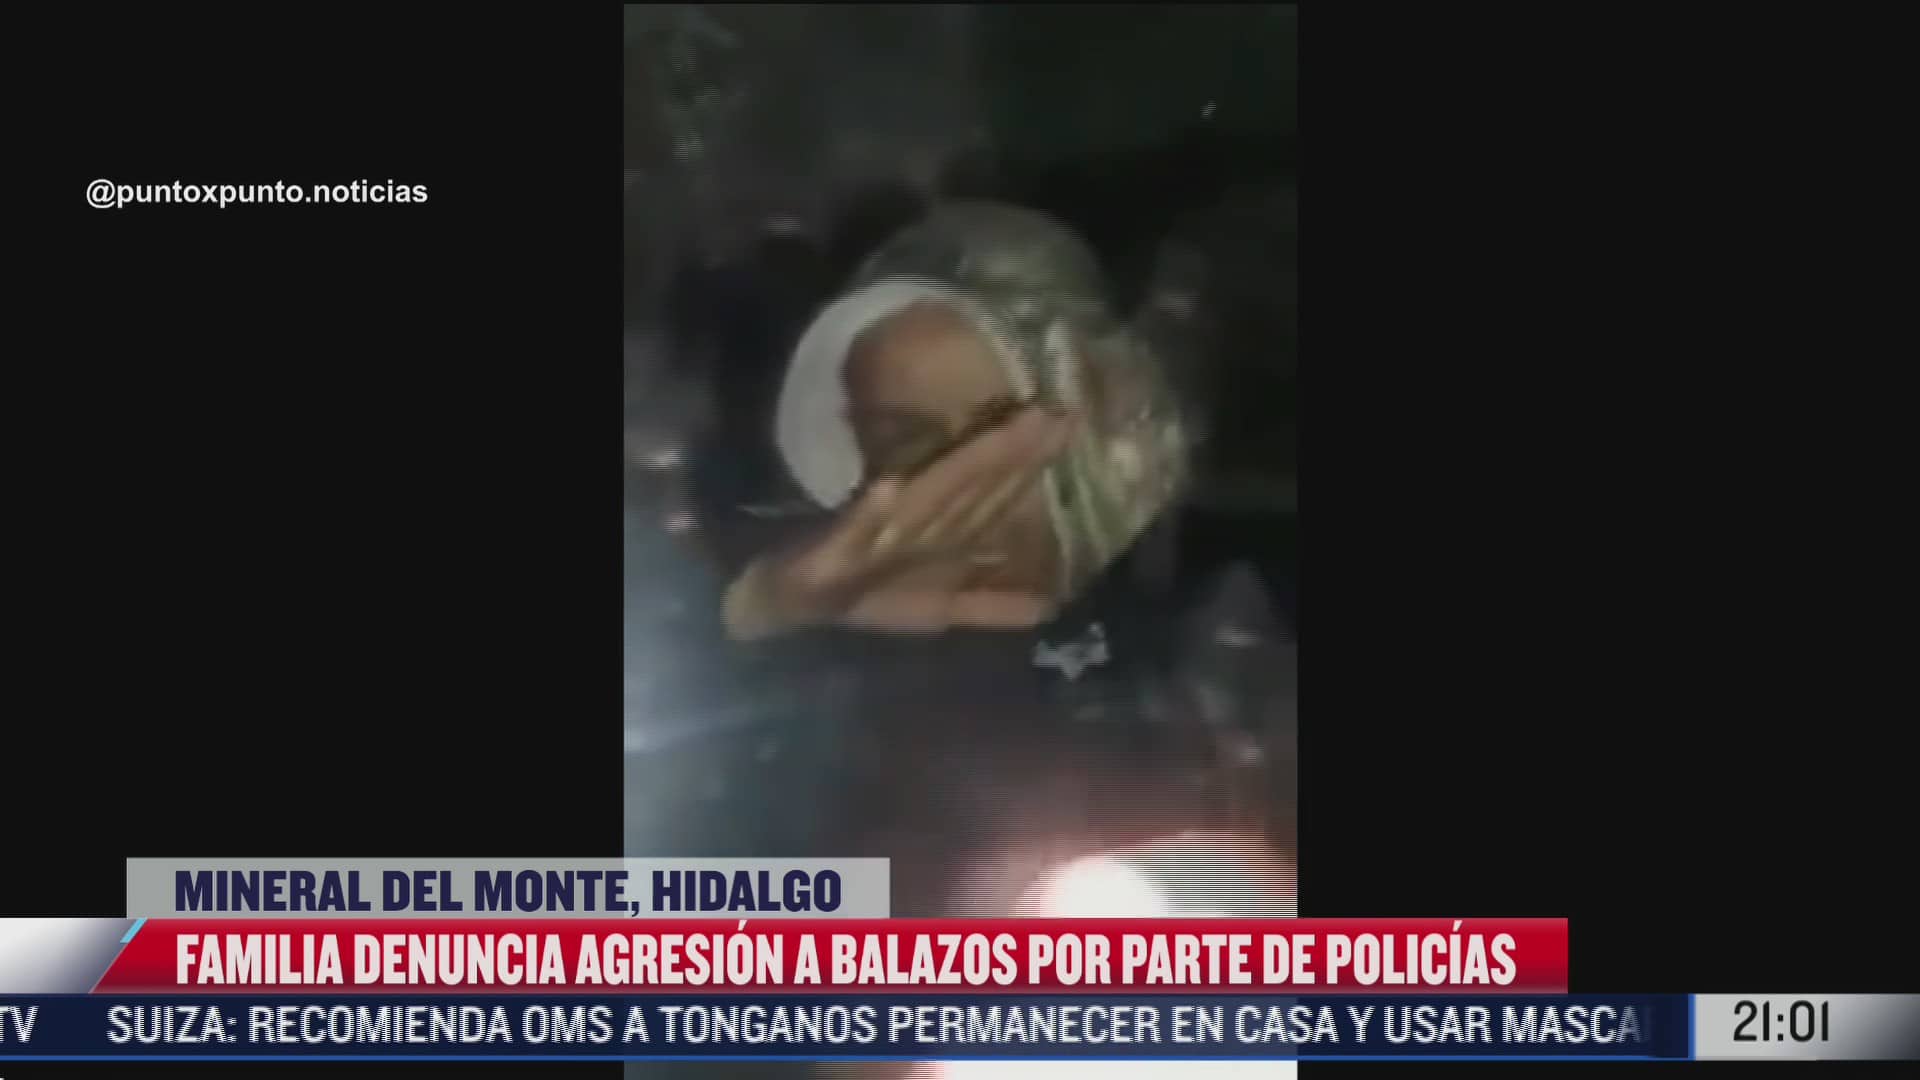 familia denuncia agresion a balazos por parte de policias en mineral del monte hidalgo